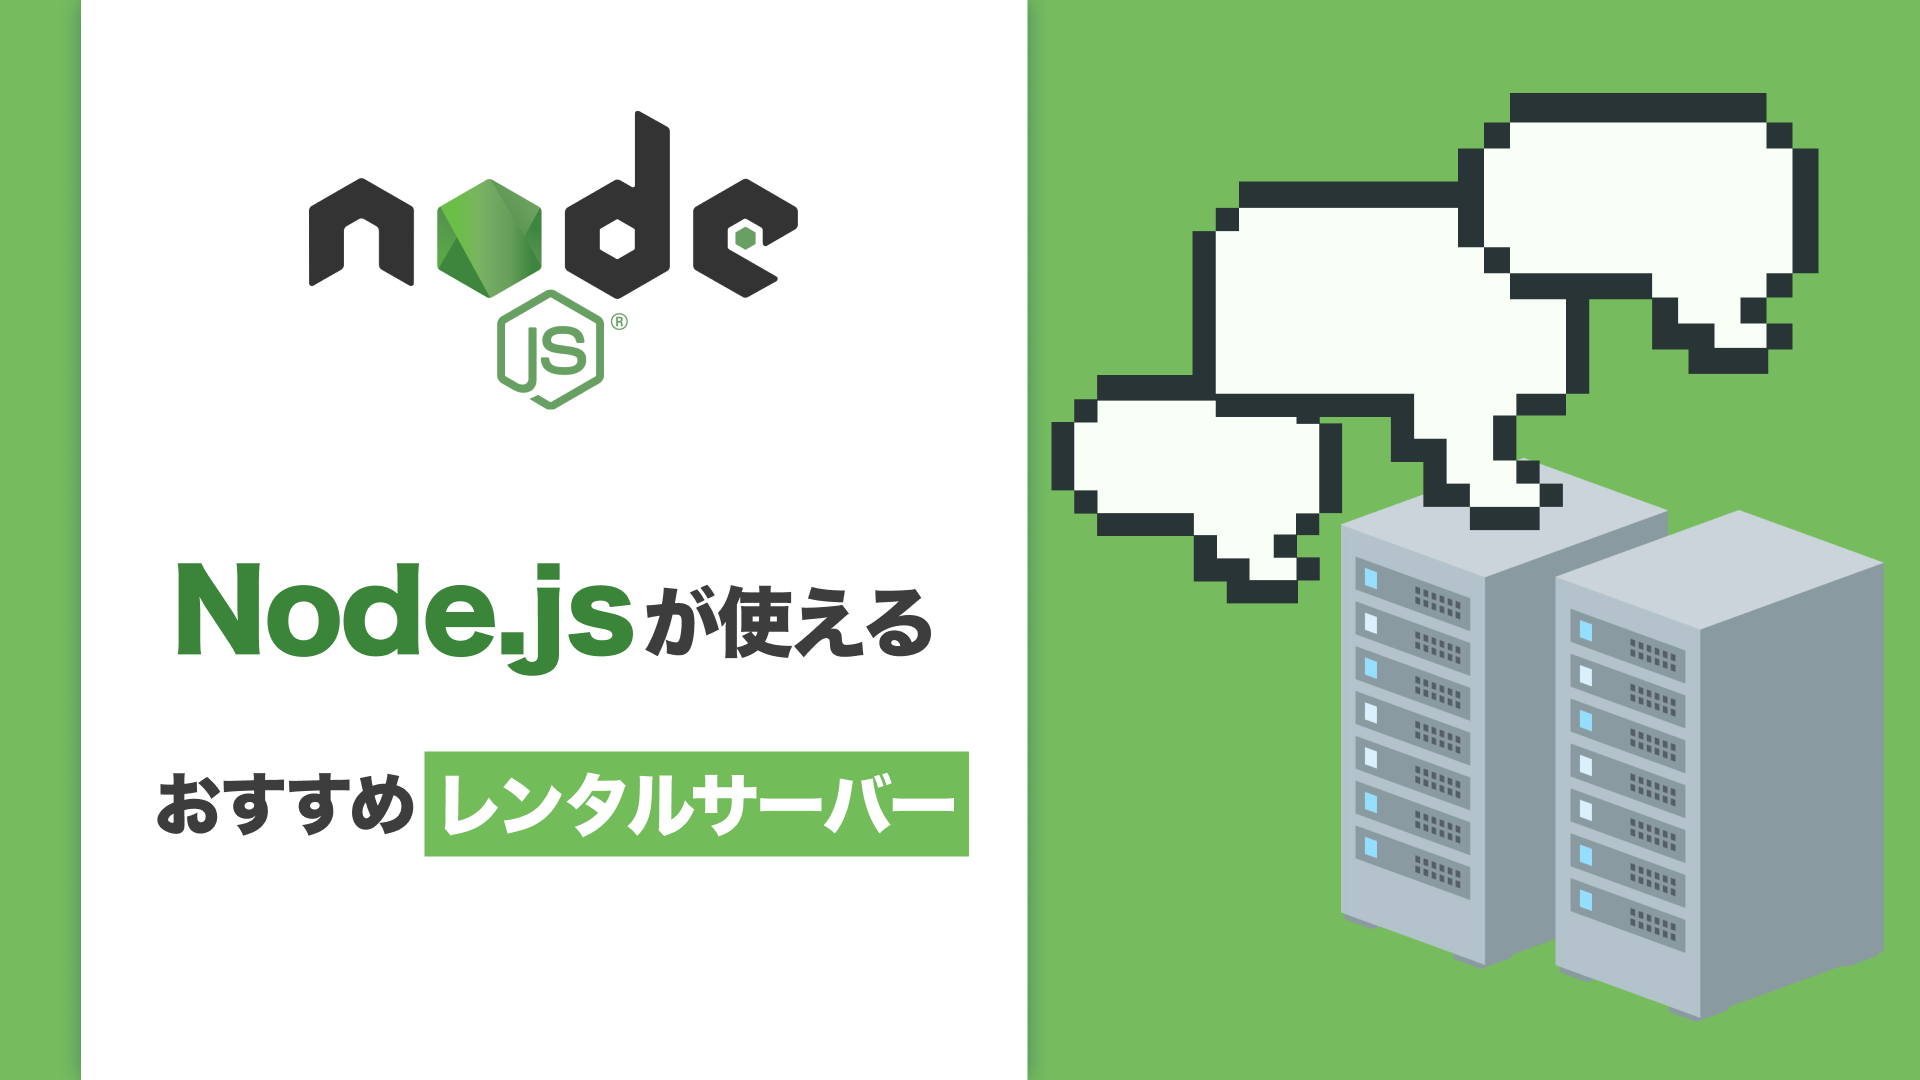 Node.jsが使えるおすすめレンタルサーバー